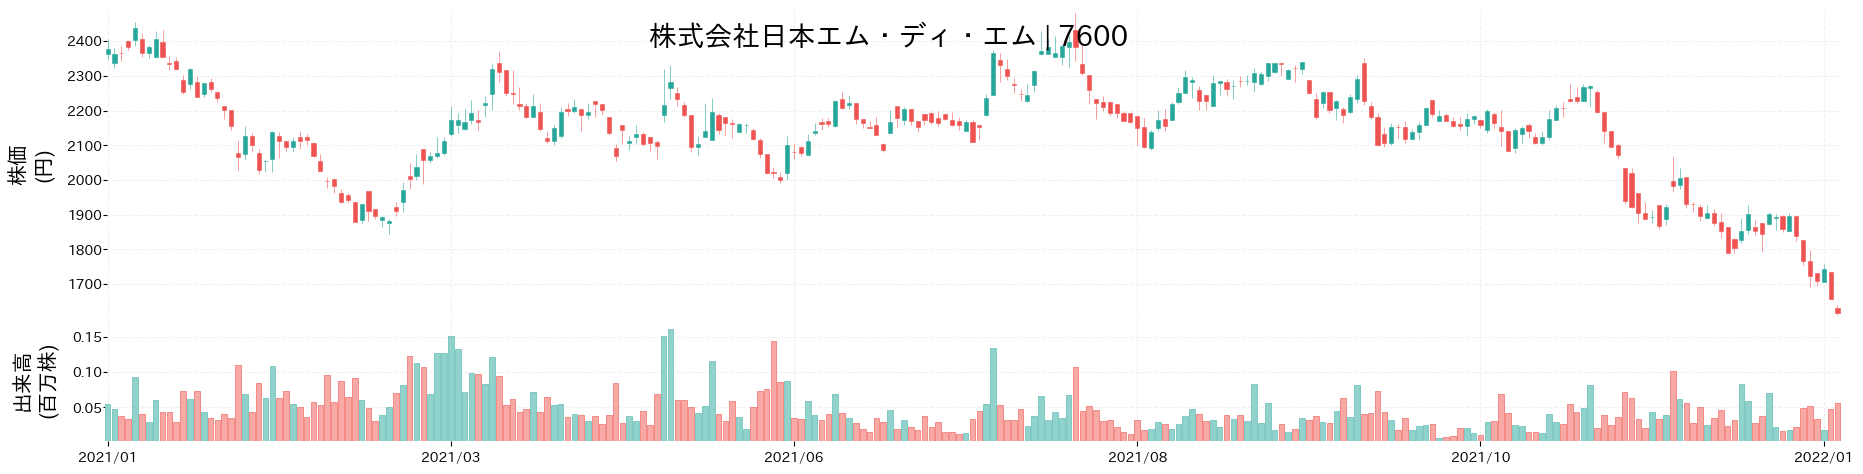 日本エム・ディ・エムの株価推移(2021)